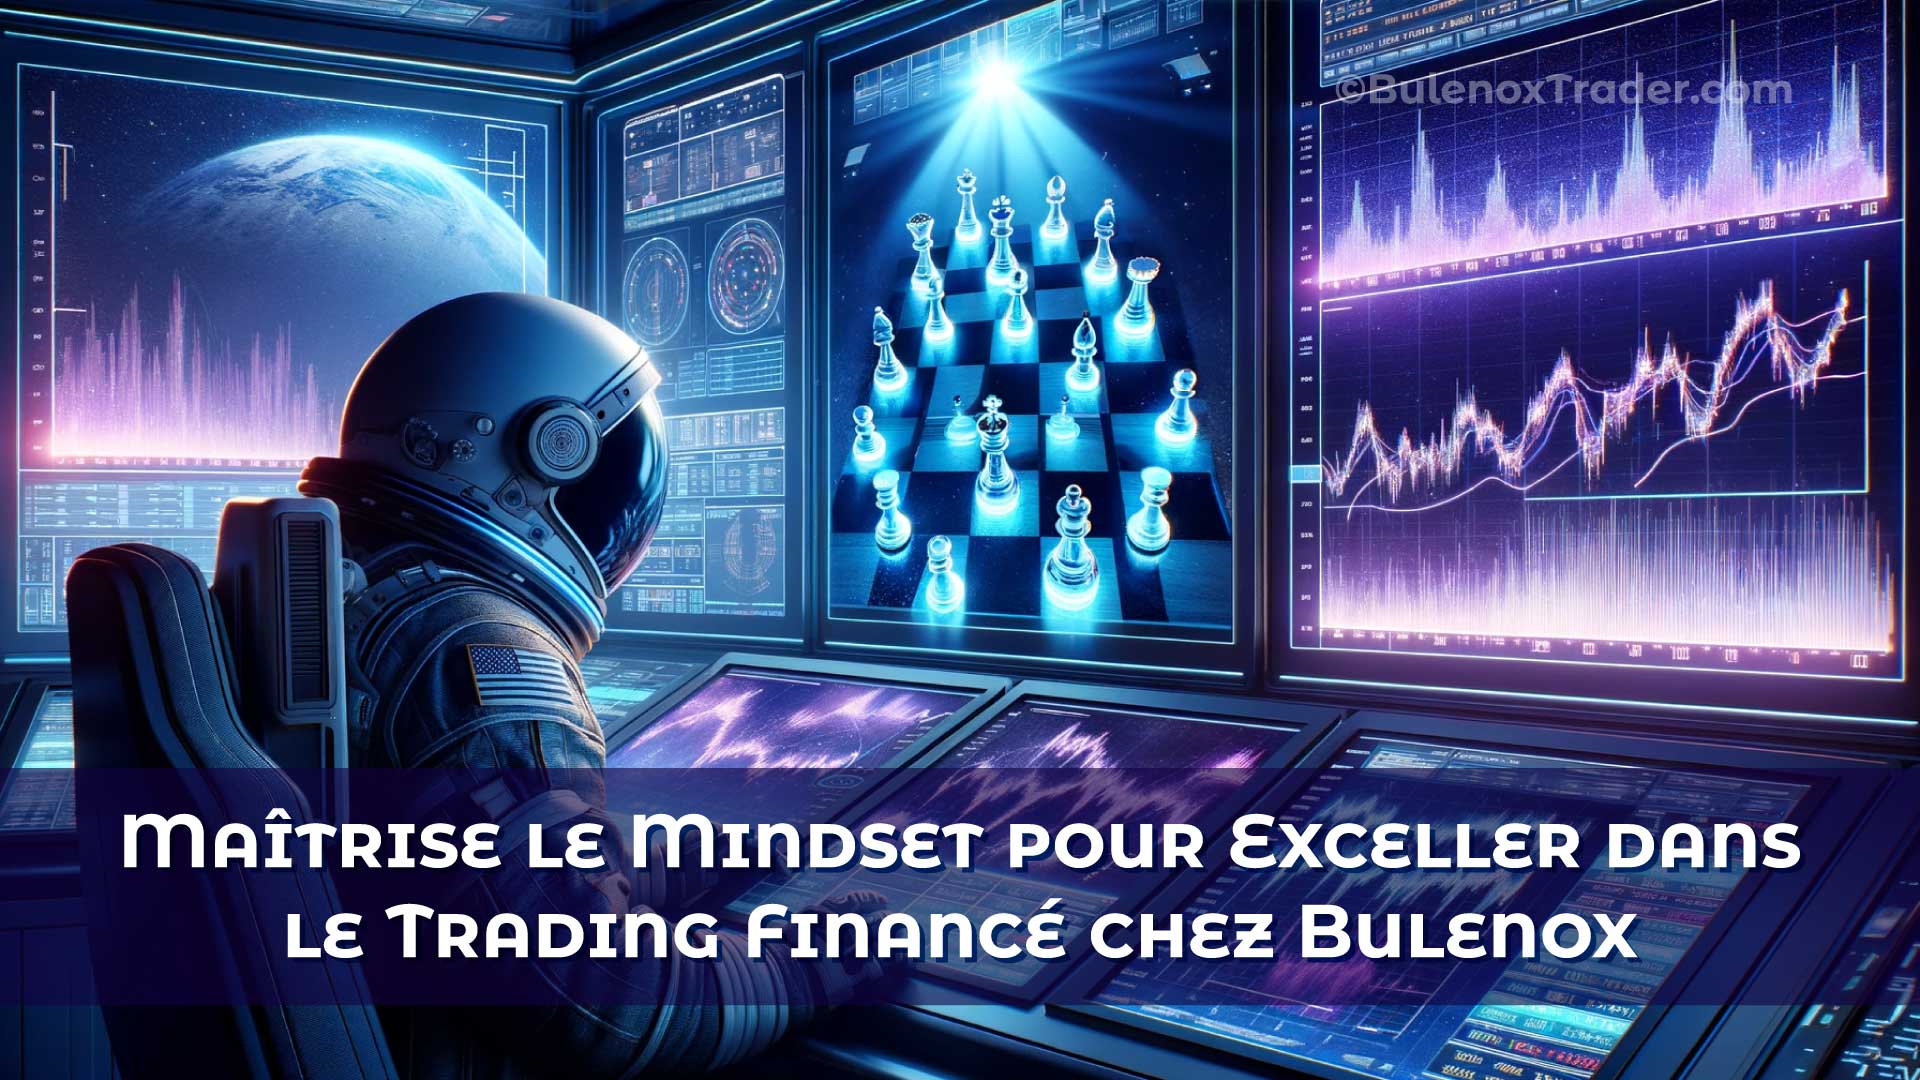 Maîtrise-le-Mindset-pour-Exceller-dans-le-Trading-Financé-chez-Bulenox-on-Bulenox-Trader-Website